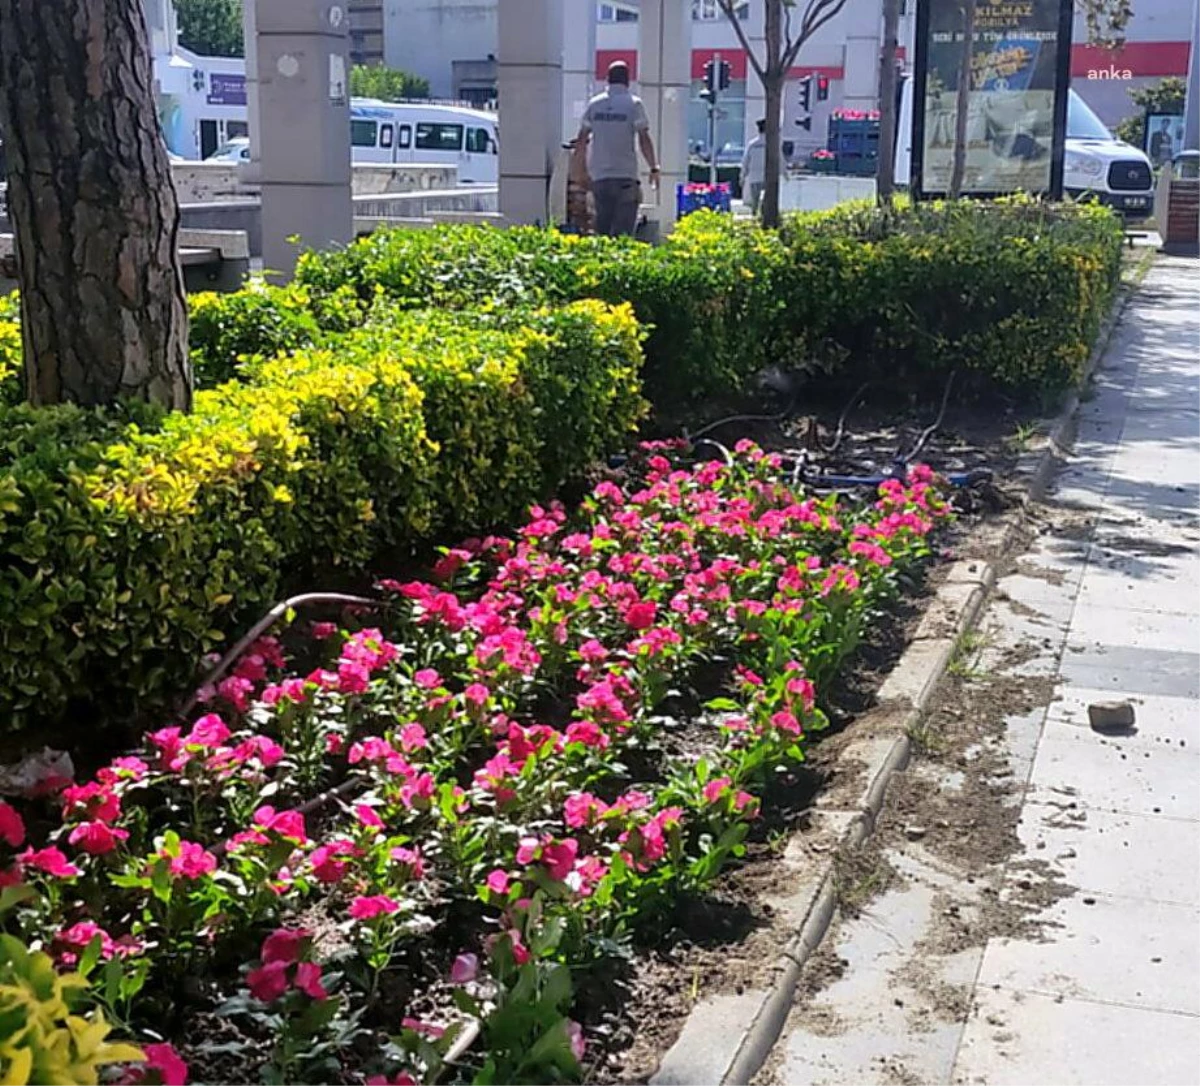 Söke Belediyesi, Kenti Çiçeklerle Renklendiriyor